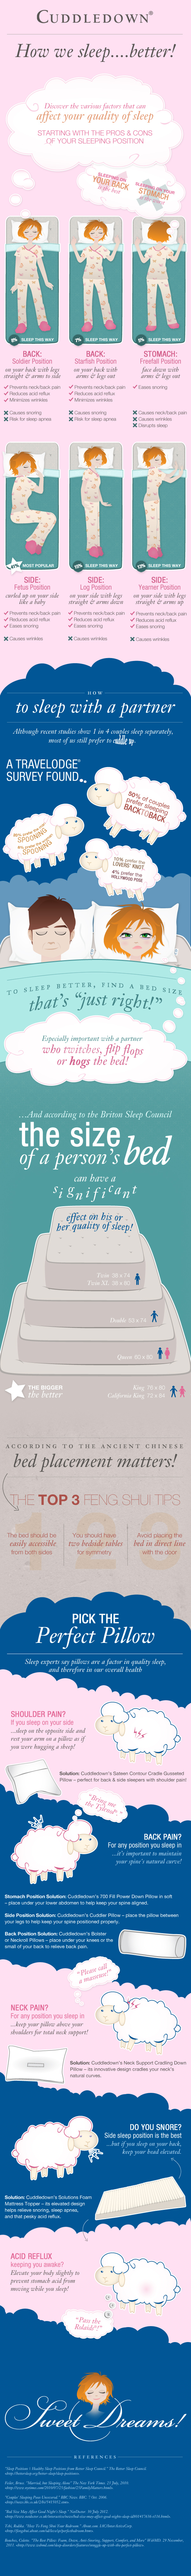 How We Sleep Better